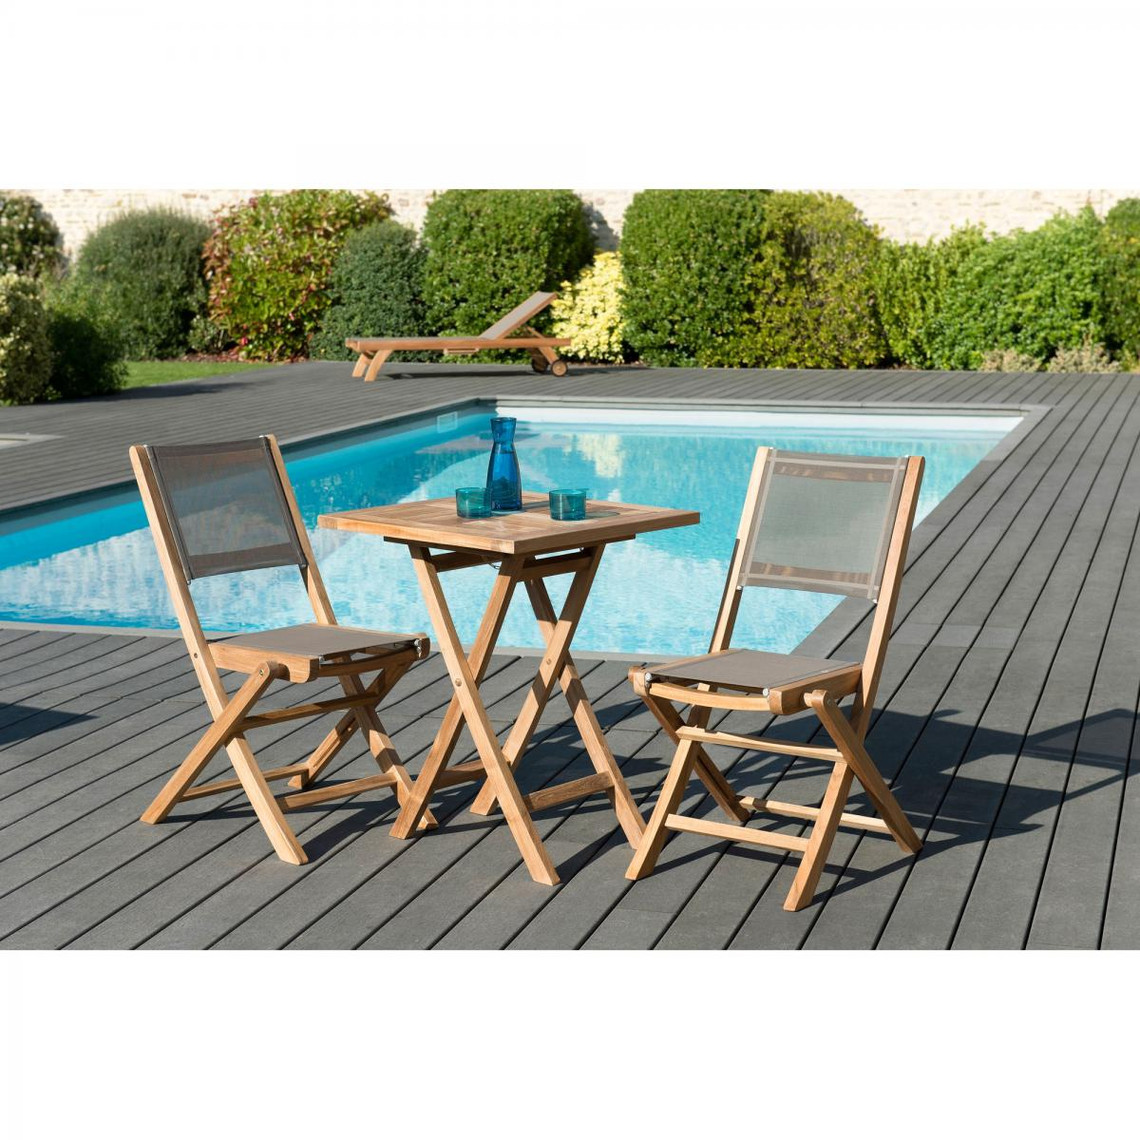 SALON DE JARDIN EN BOIS TECK 2 pers - Ensemble de jardin - 1 Table carrée pliante 60 cm et 2 chaises